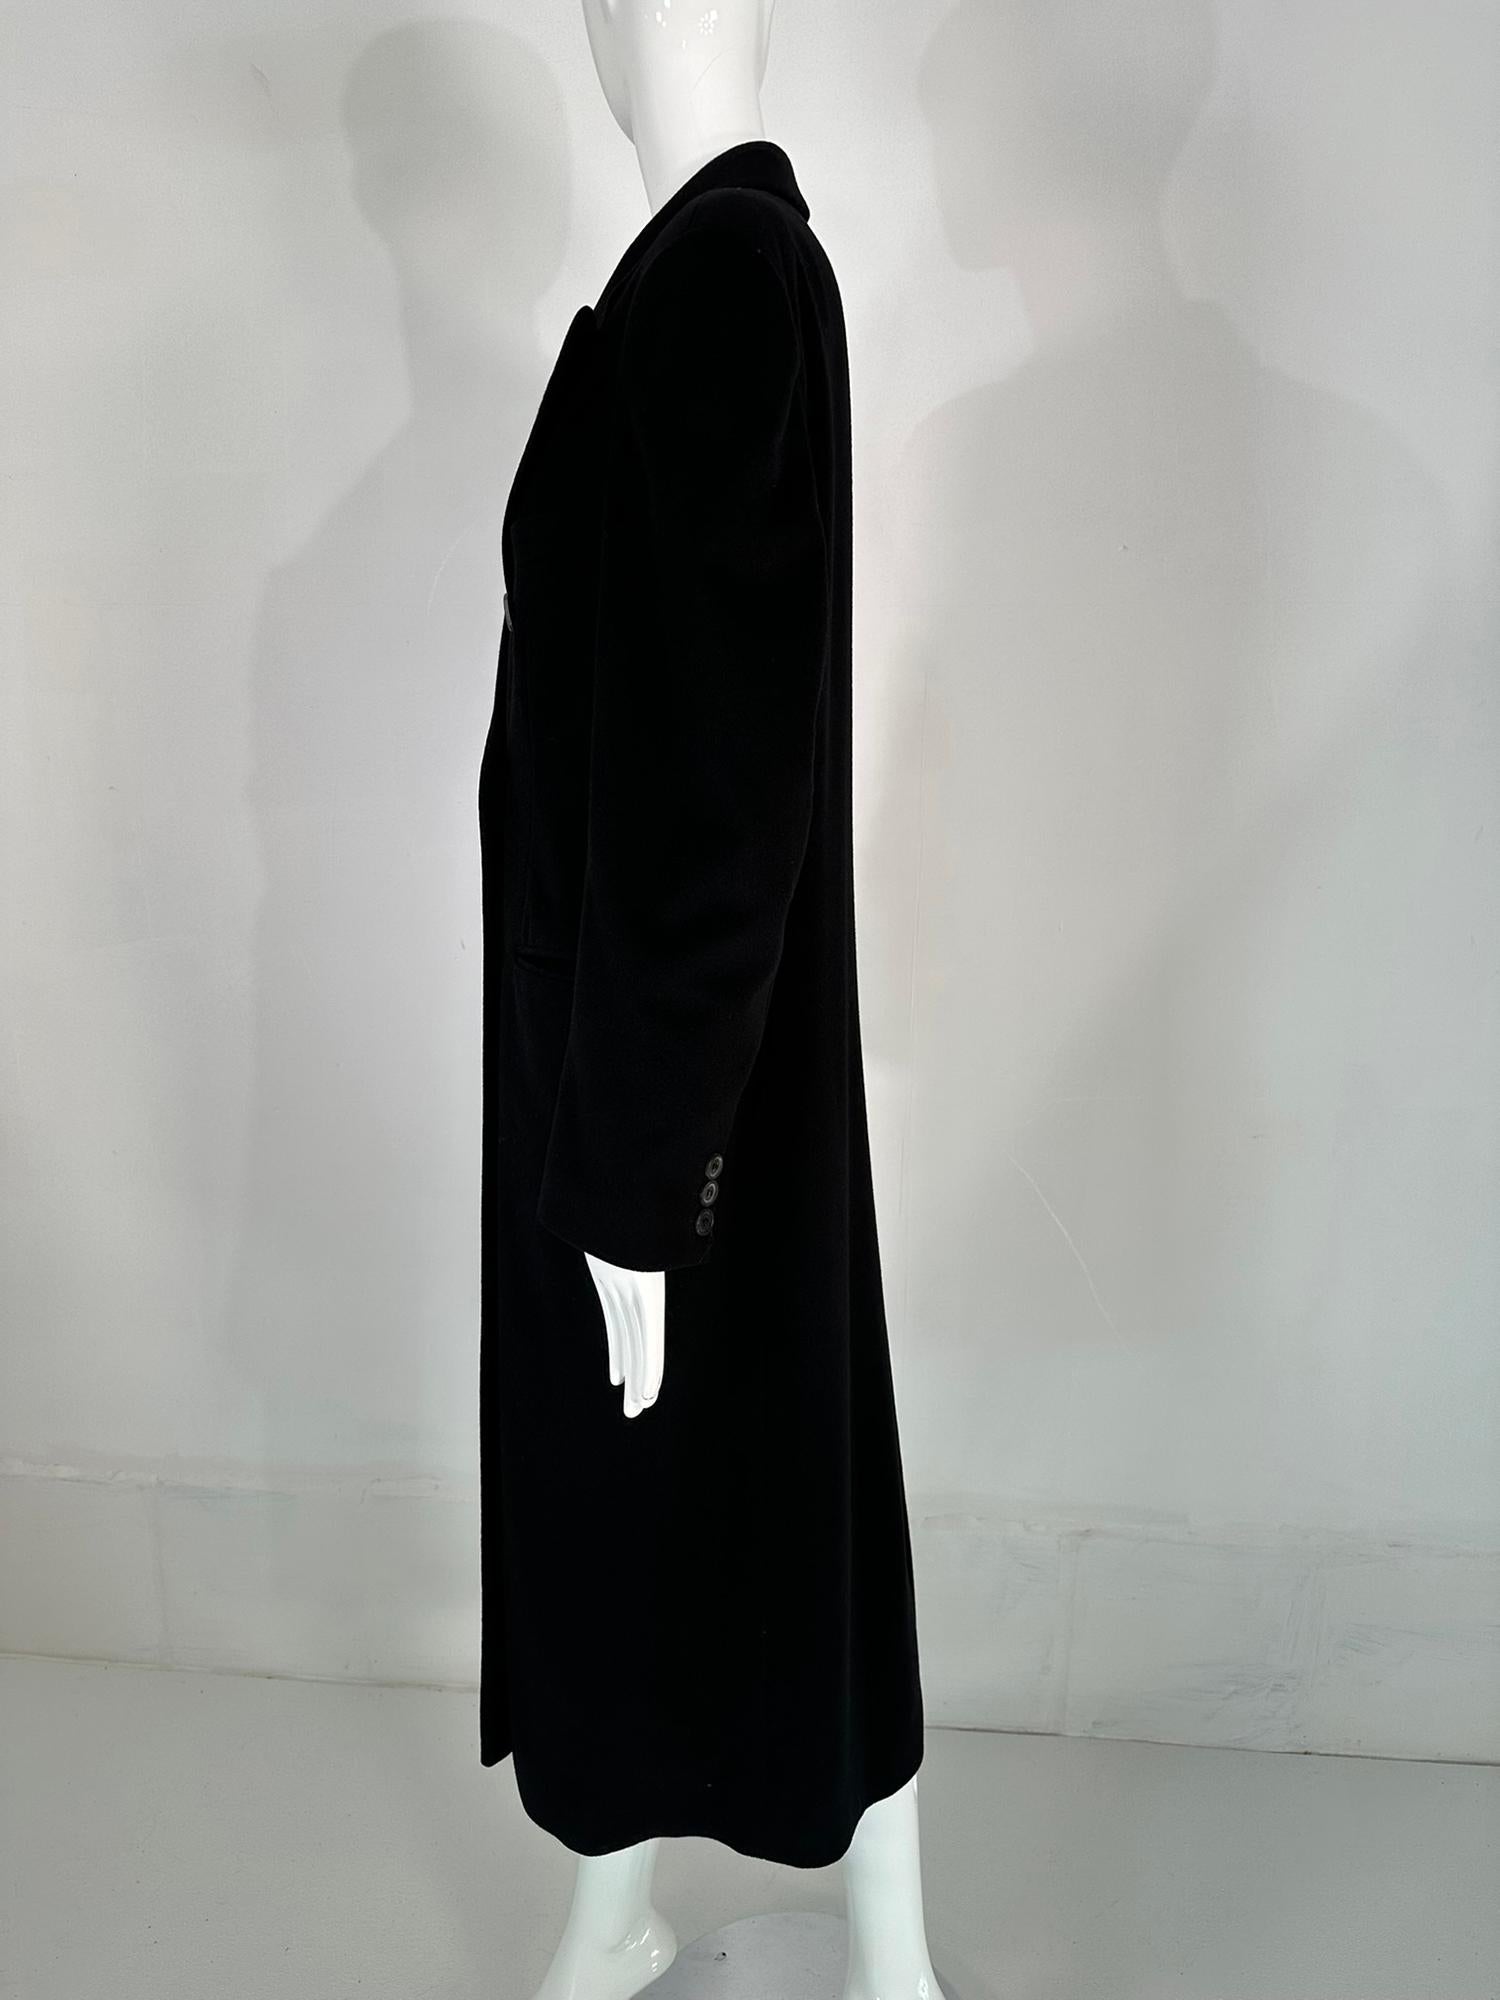 Giorgio Armani Classico Black Label Black Cashmere Double Breasted Winter Coat 6